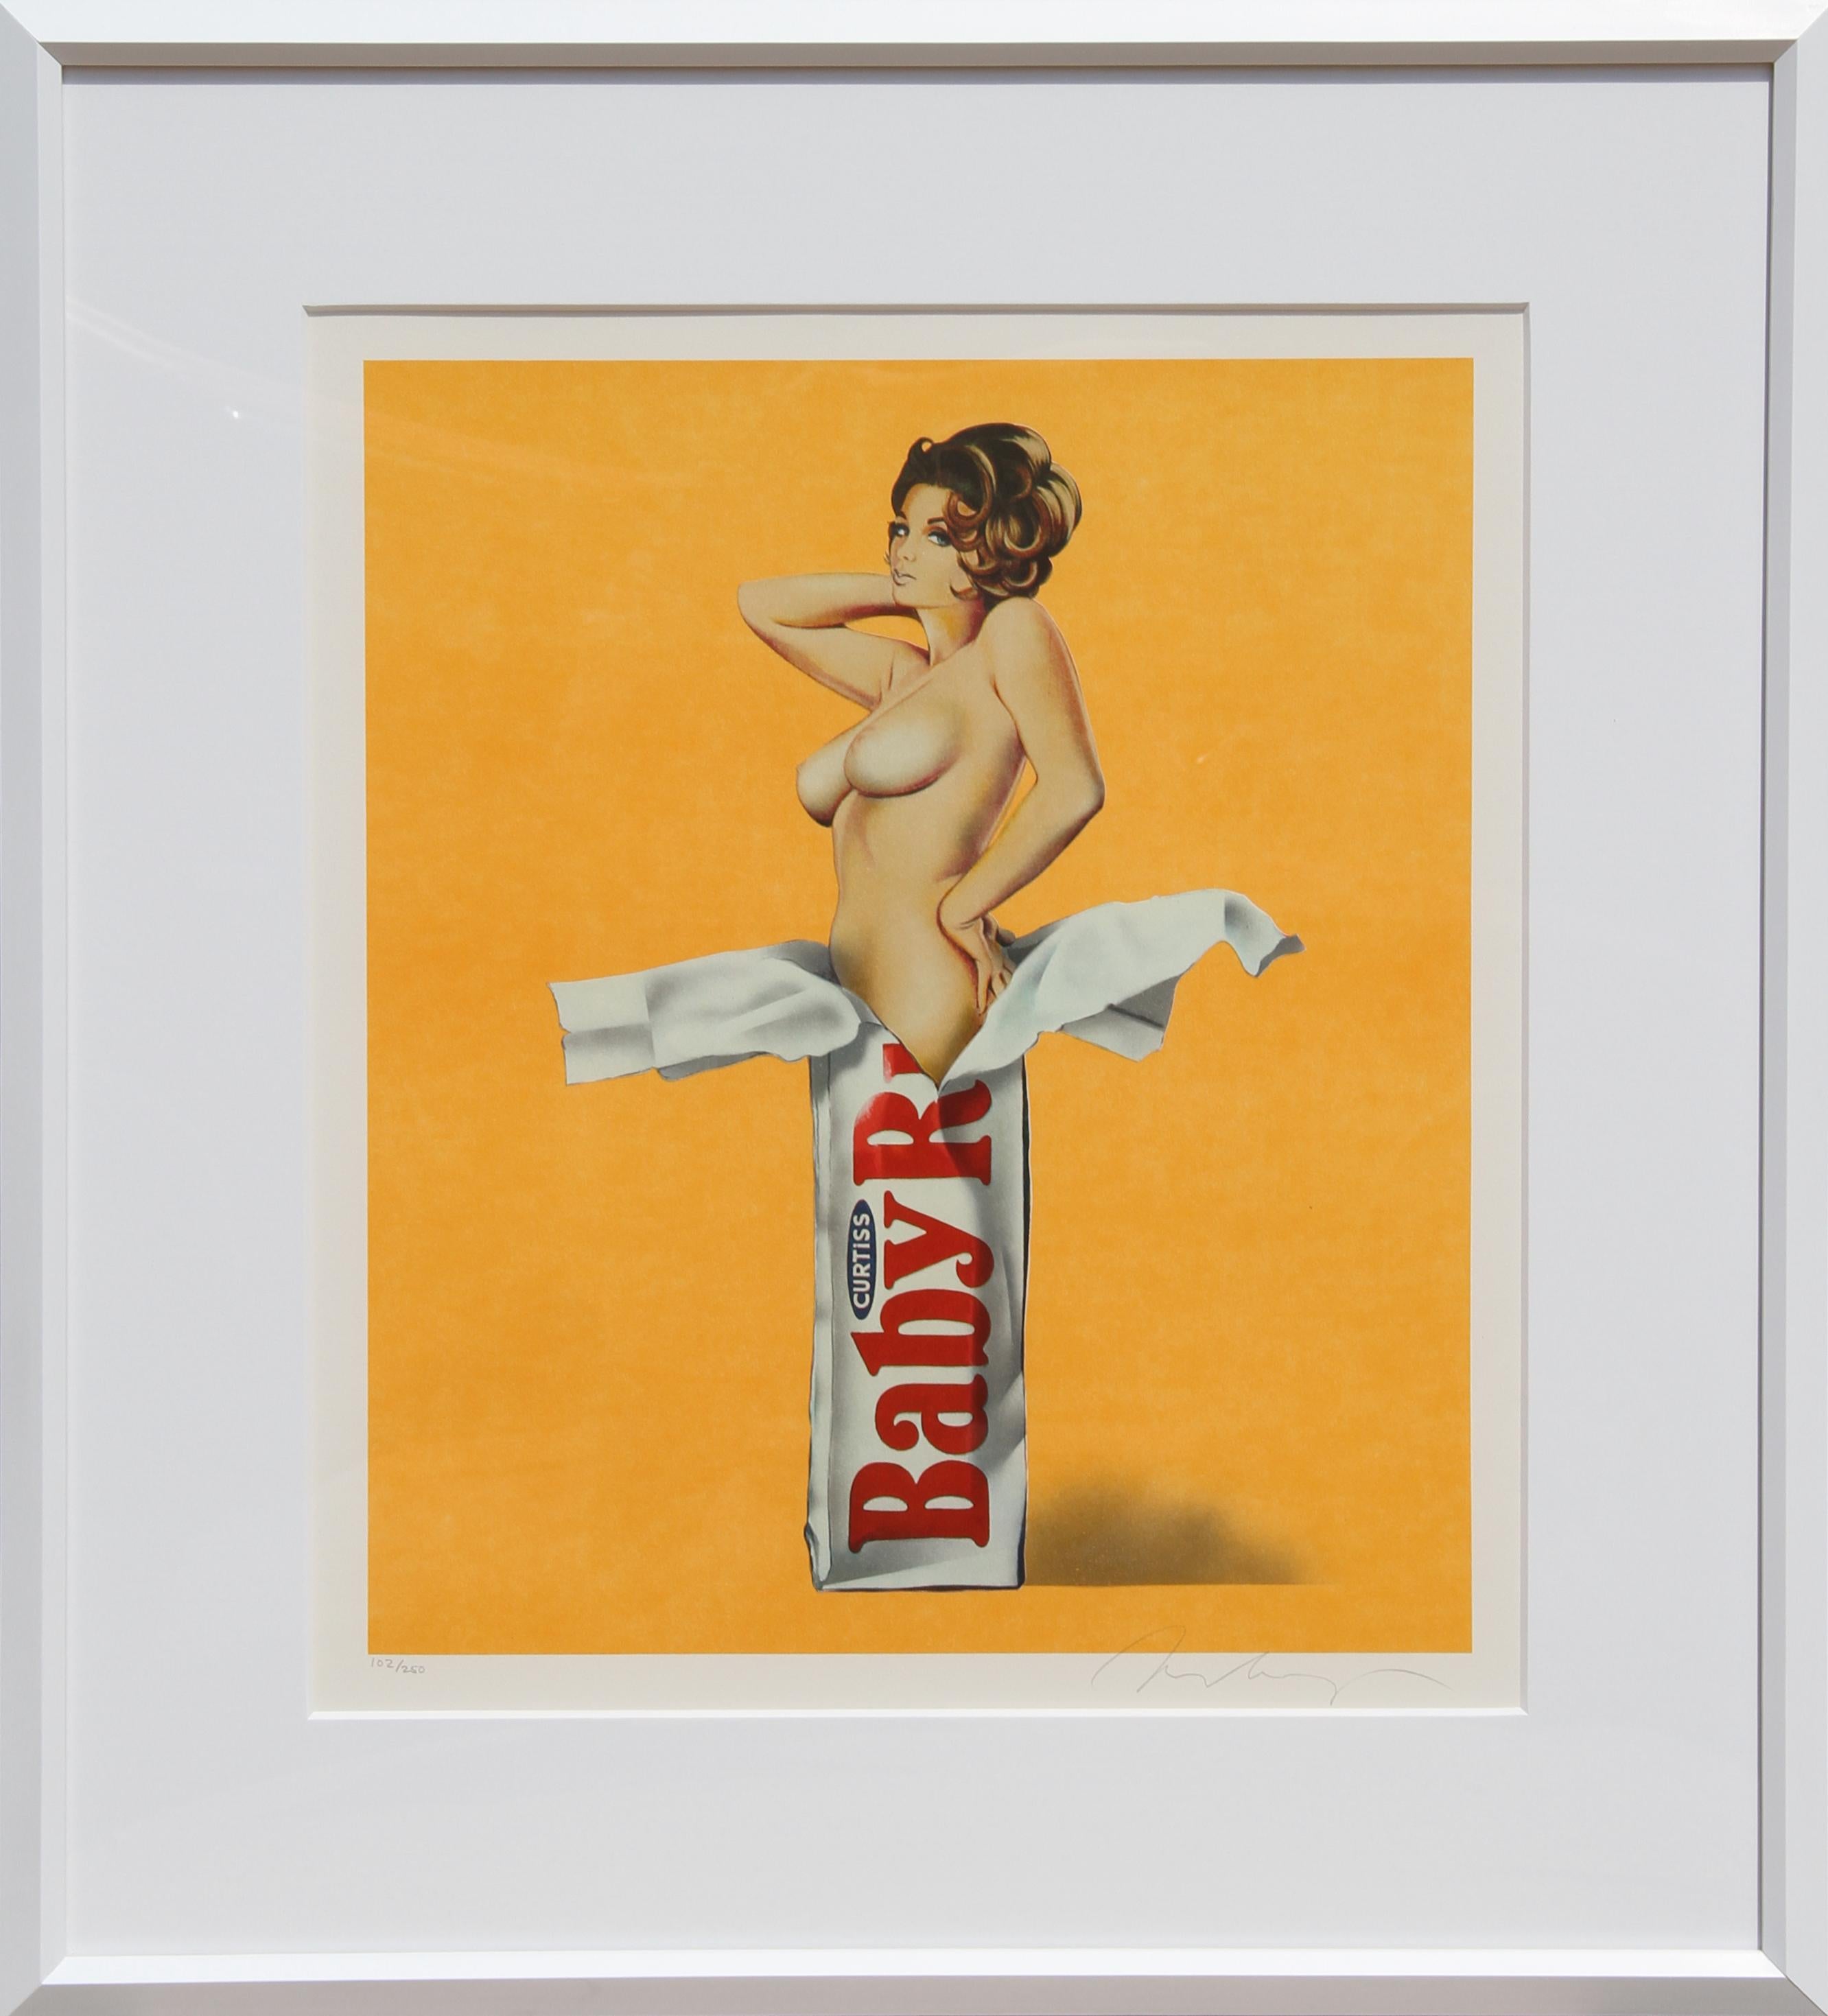 Künstler: Mel Ramos, Amerikaner (1935 - )
Titel: Süßigkeiten (Baby Ruth)
Jahr: 1981
Medium: Lithographie, mit Bleistift signiert und nummeriert 
Auflage: 250
Papierformat: 24,5 Zoll x 20 Zoll (62,23 cm x 50,8 cm)
Rahmen: 28 x 25 Zoll